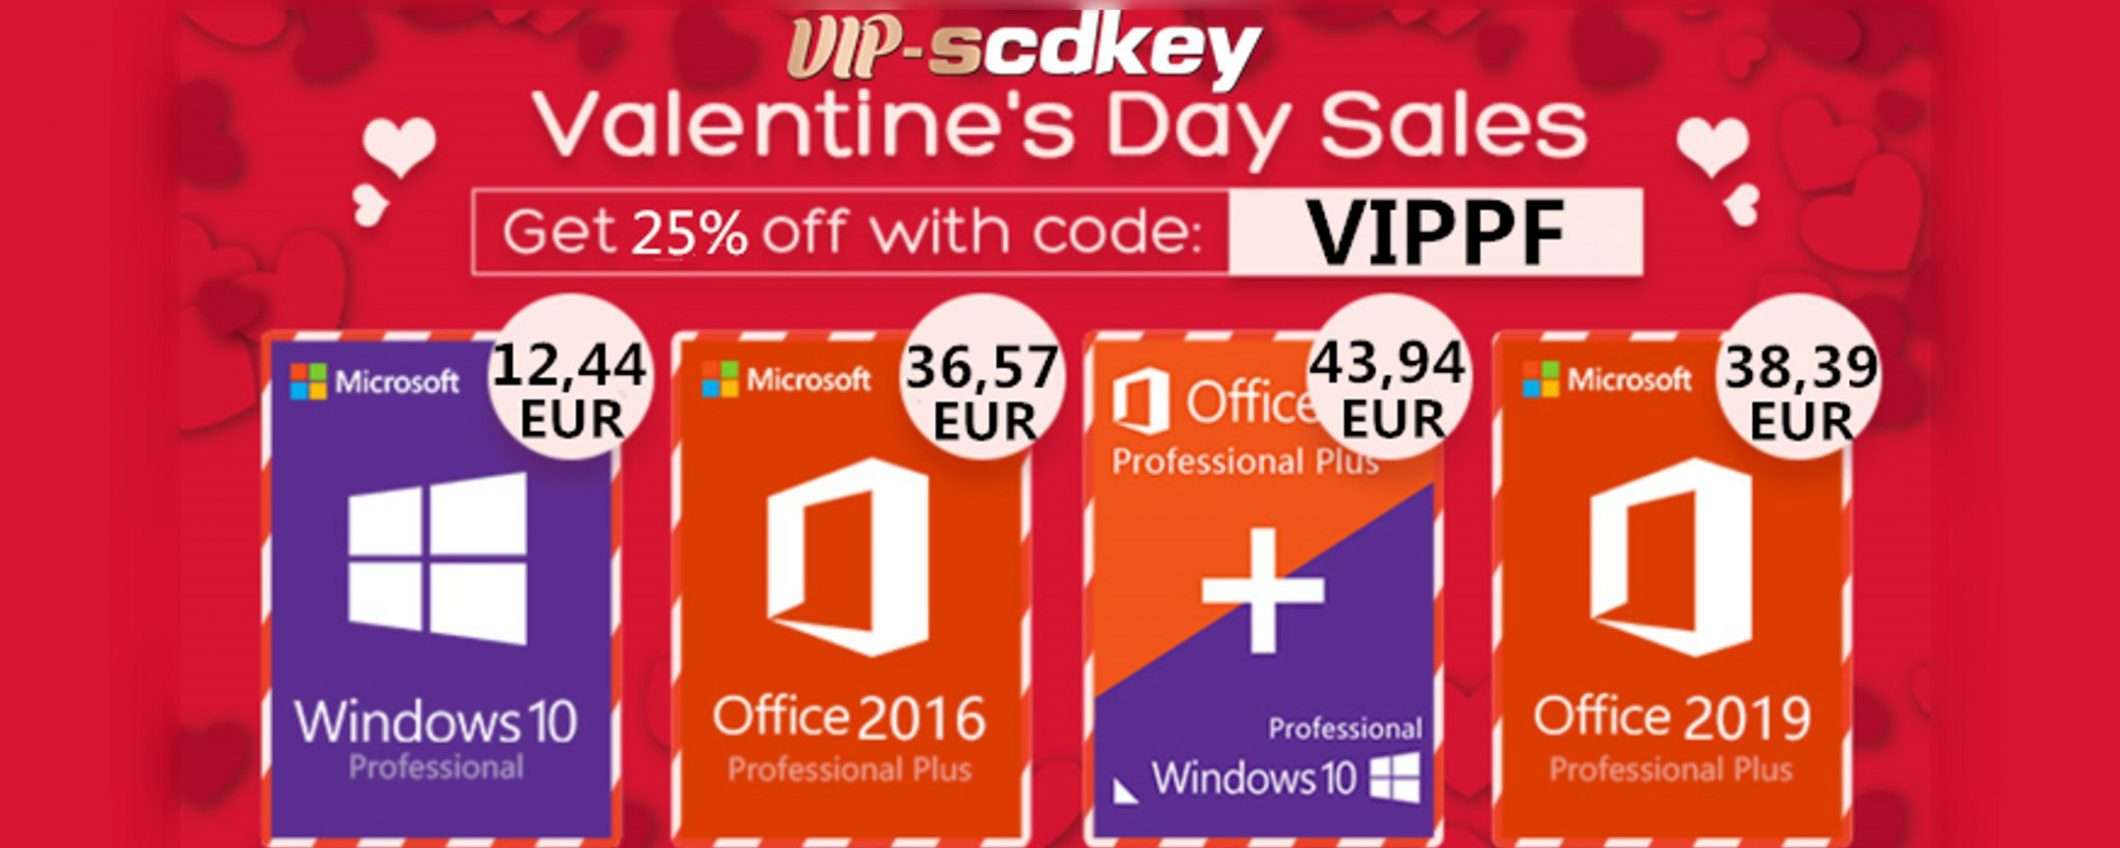 San Valentino con VIP-scdkey: Windows 10 PRO a 12€